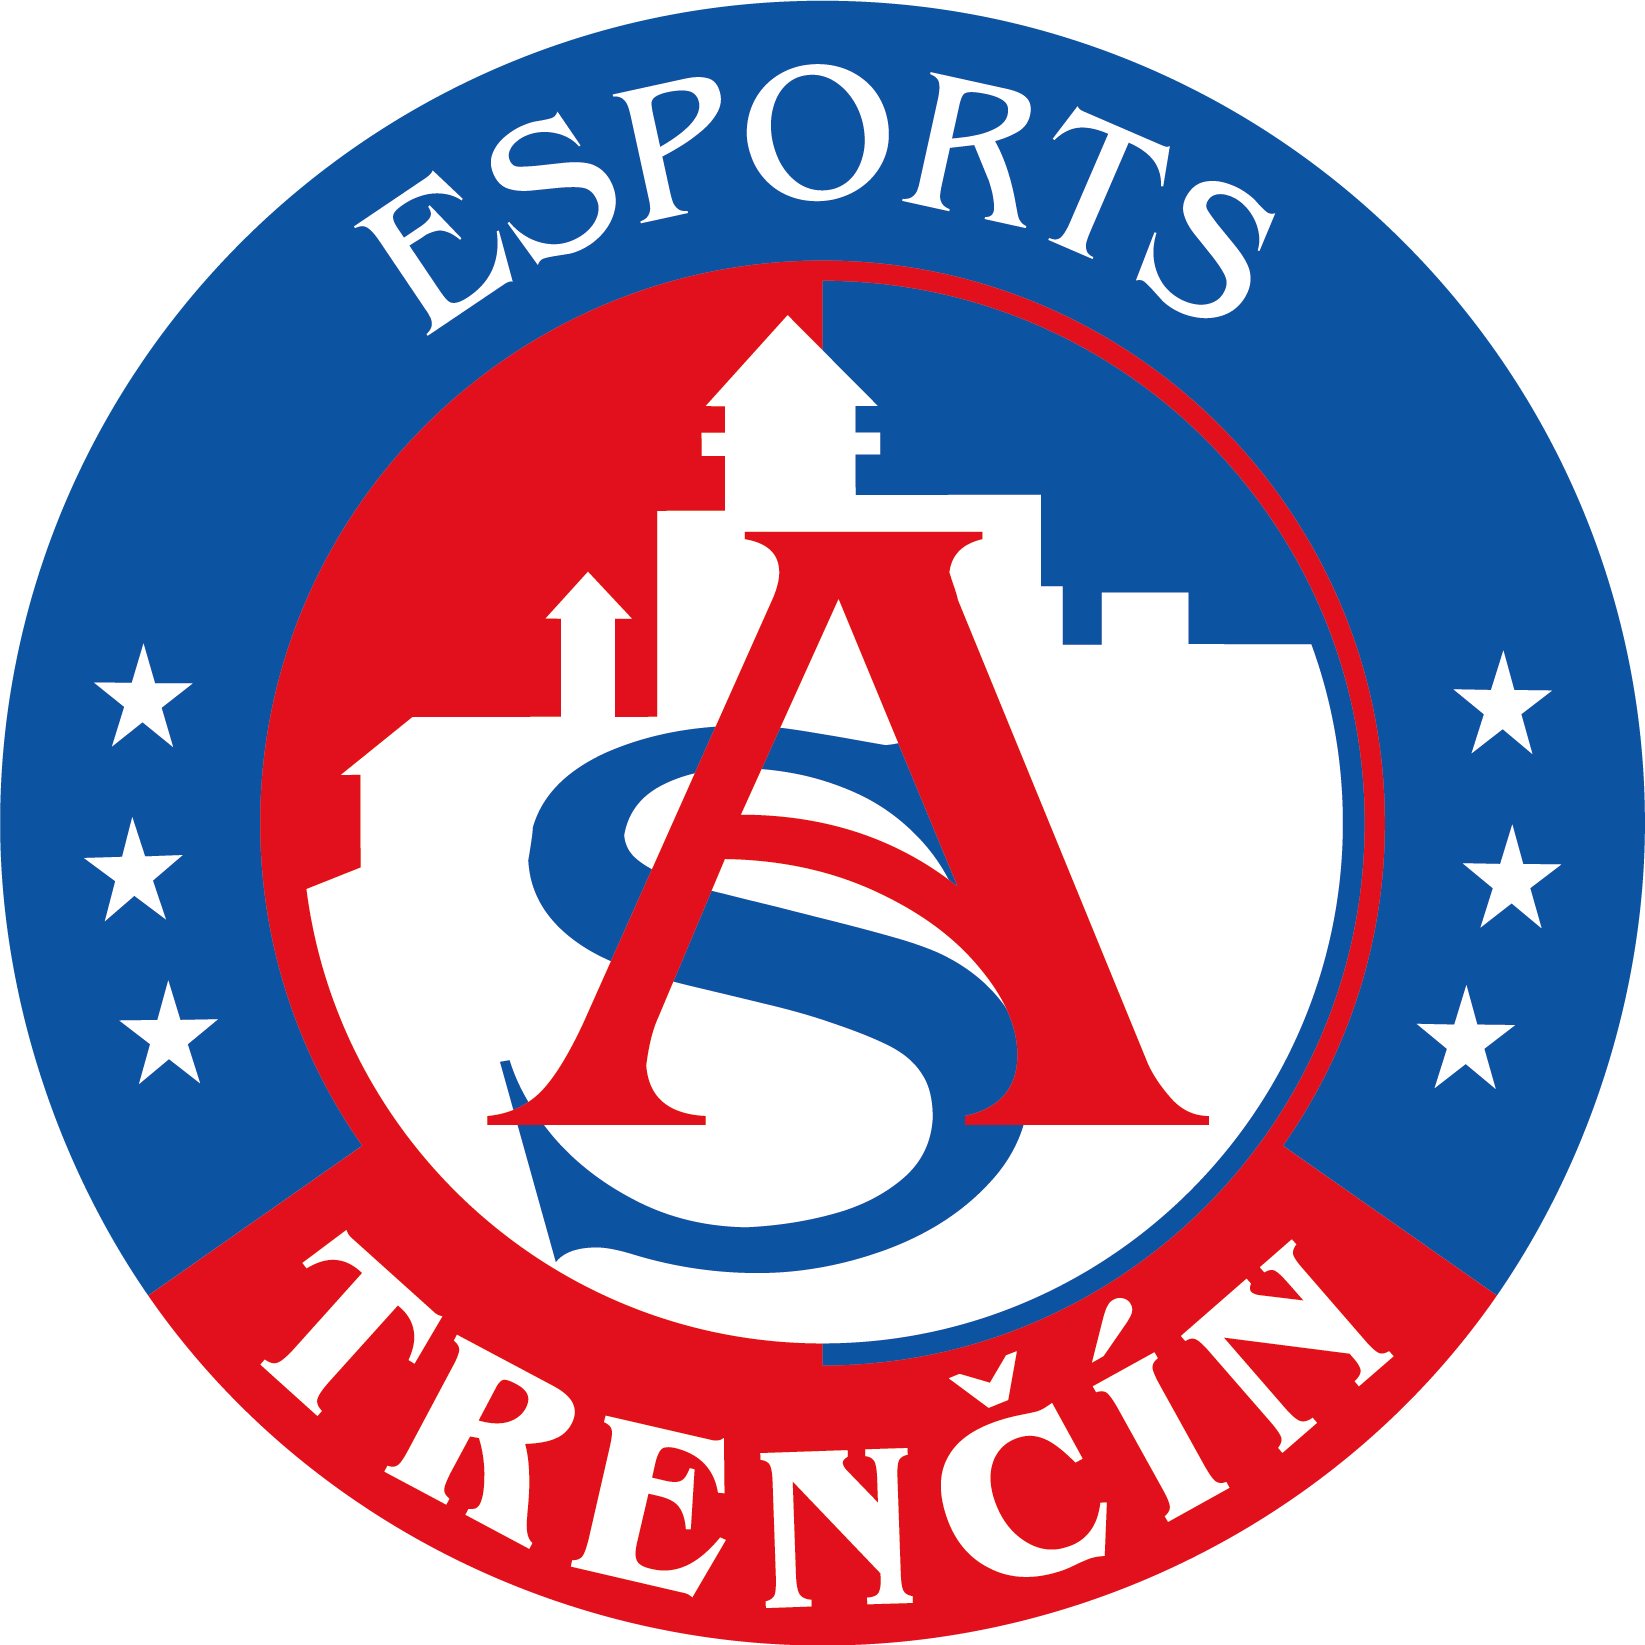 Official account of AS Trenčín esports team🎮🏆